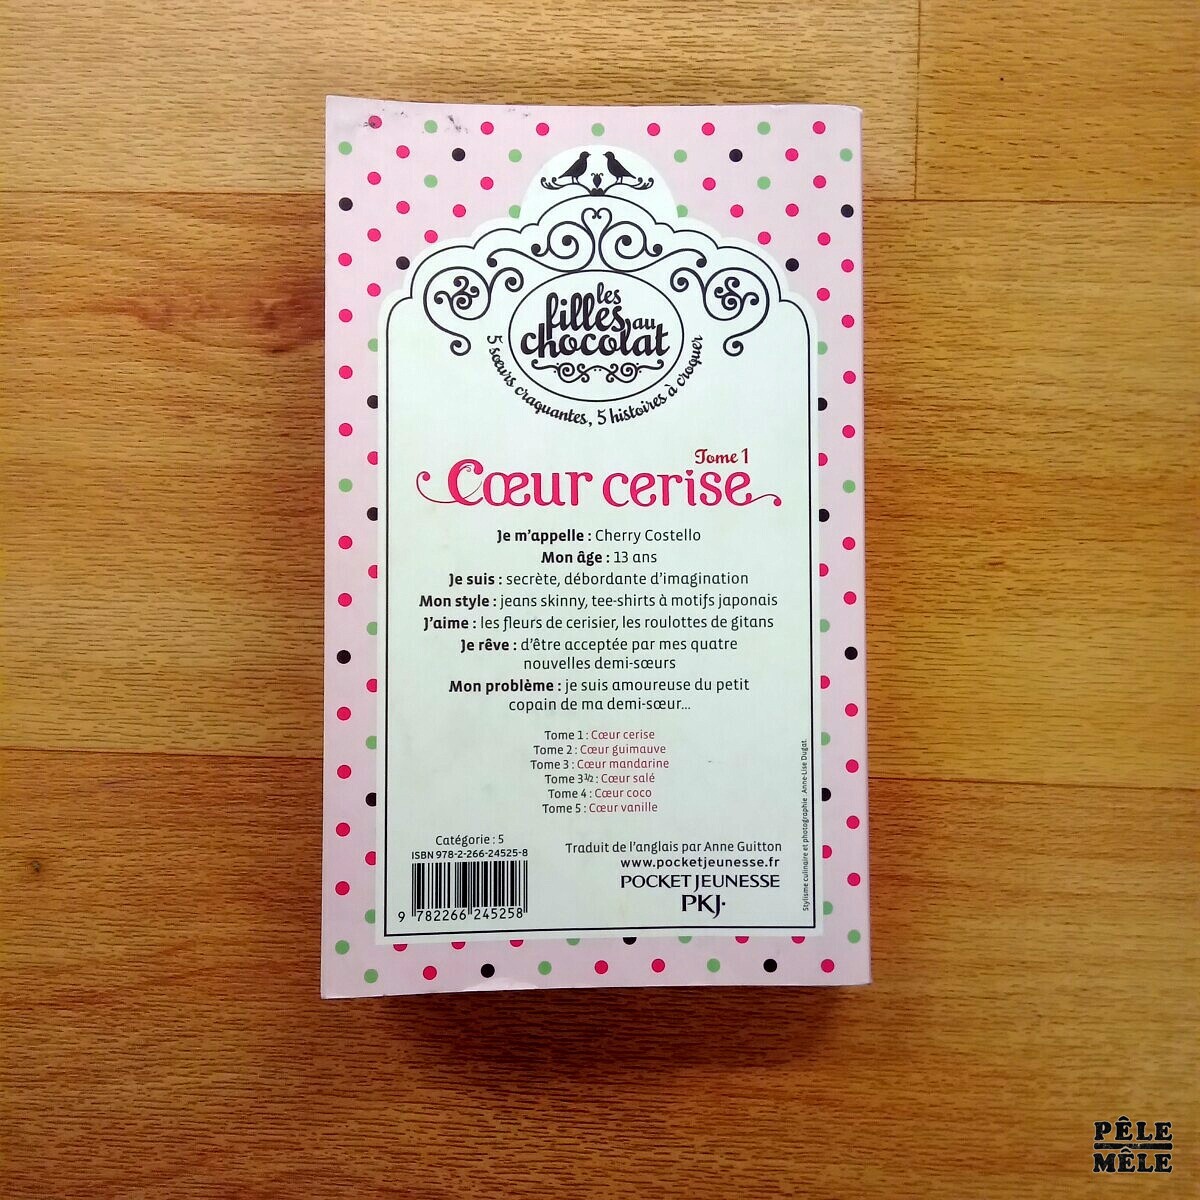 Les filles au chocolat tome 2 : Cœur guimauve - Cathy Cassidy